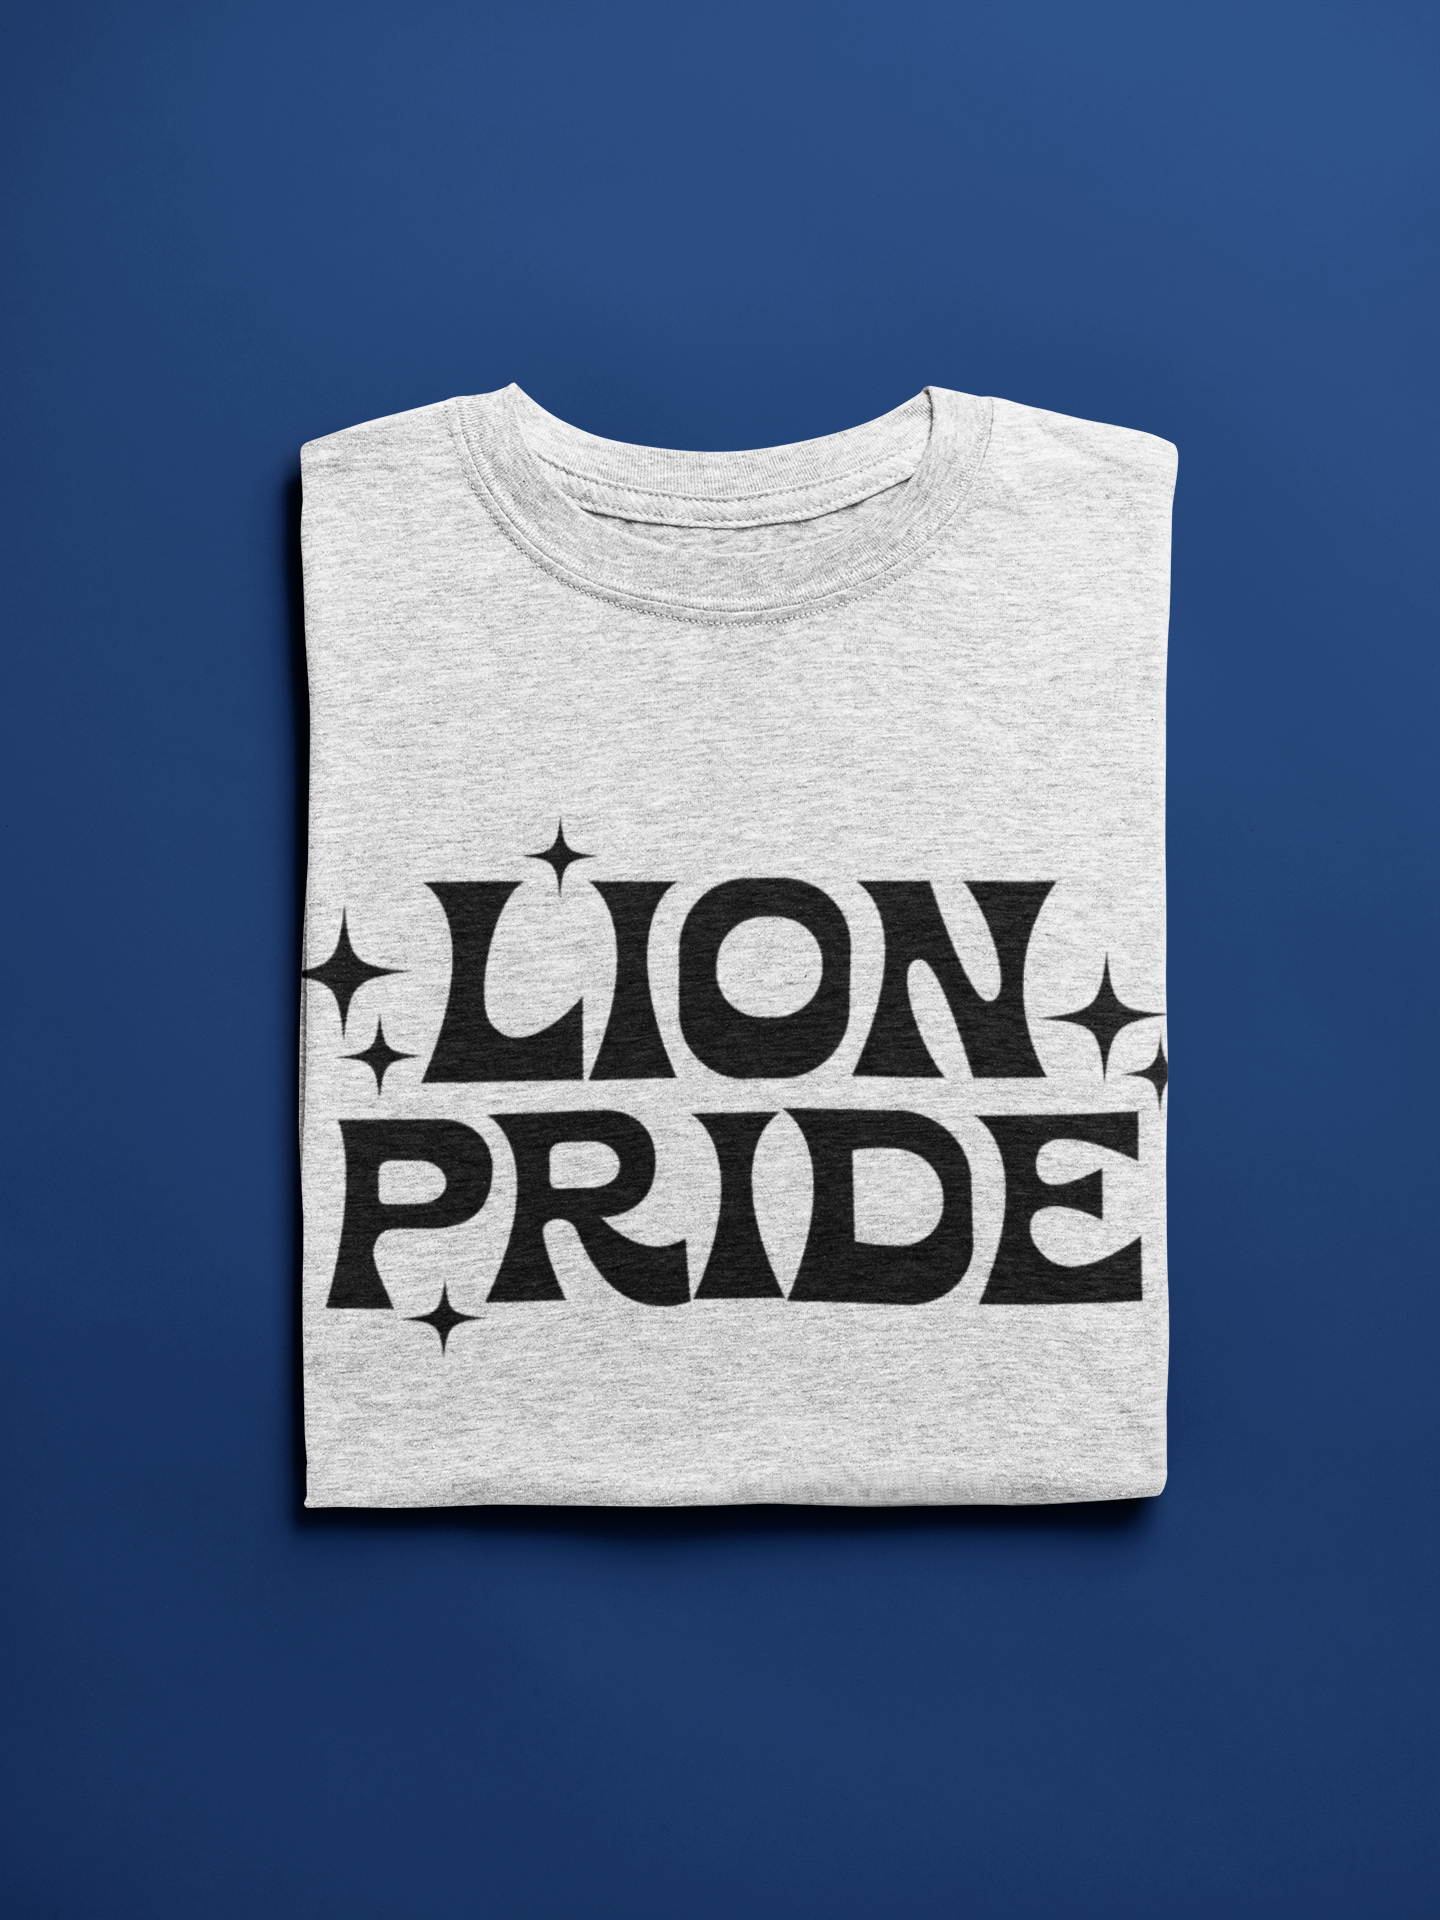 Lion Pride Mascot SVG Digital Download Design File